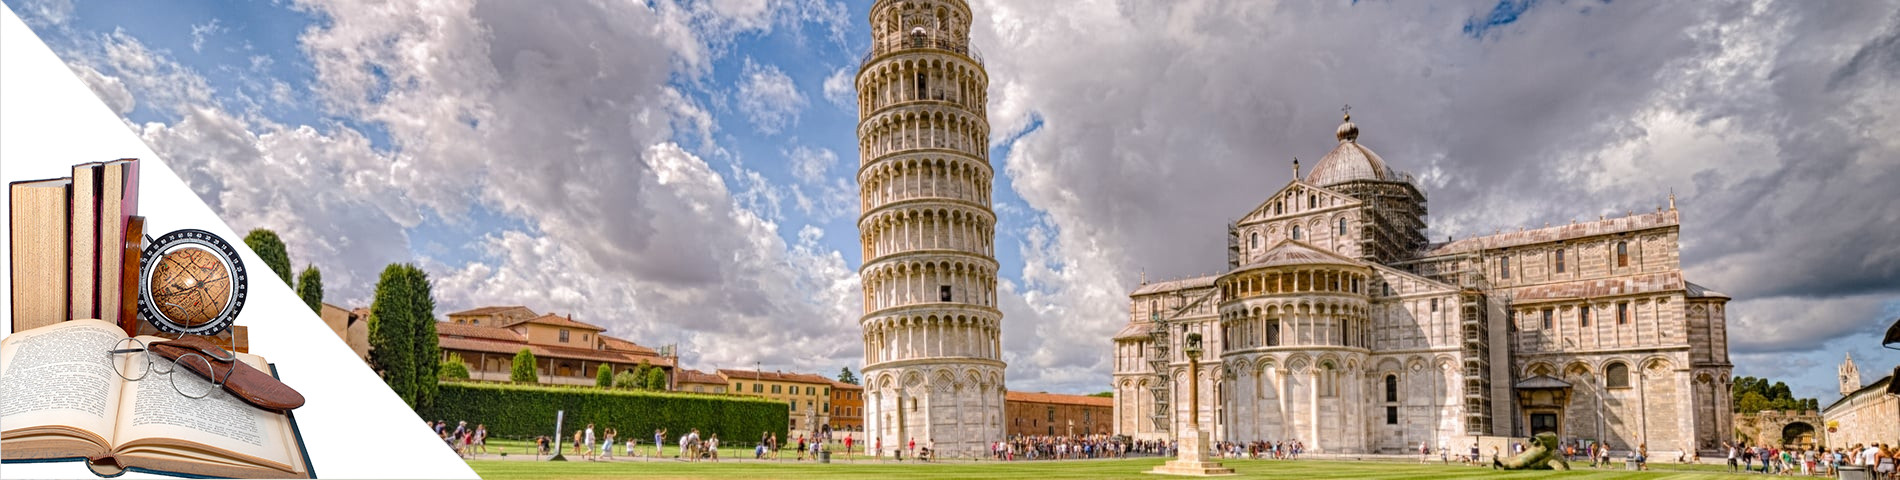 Pisa - Italia & taiteet & kirjallisuus